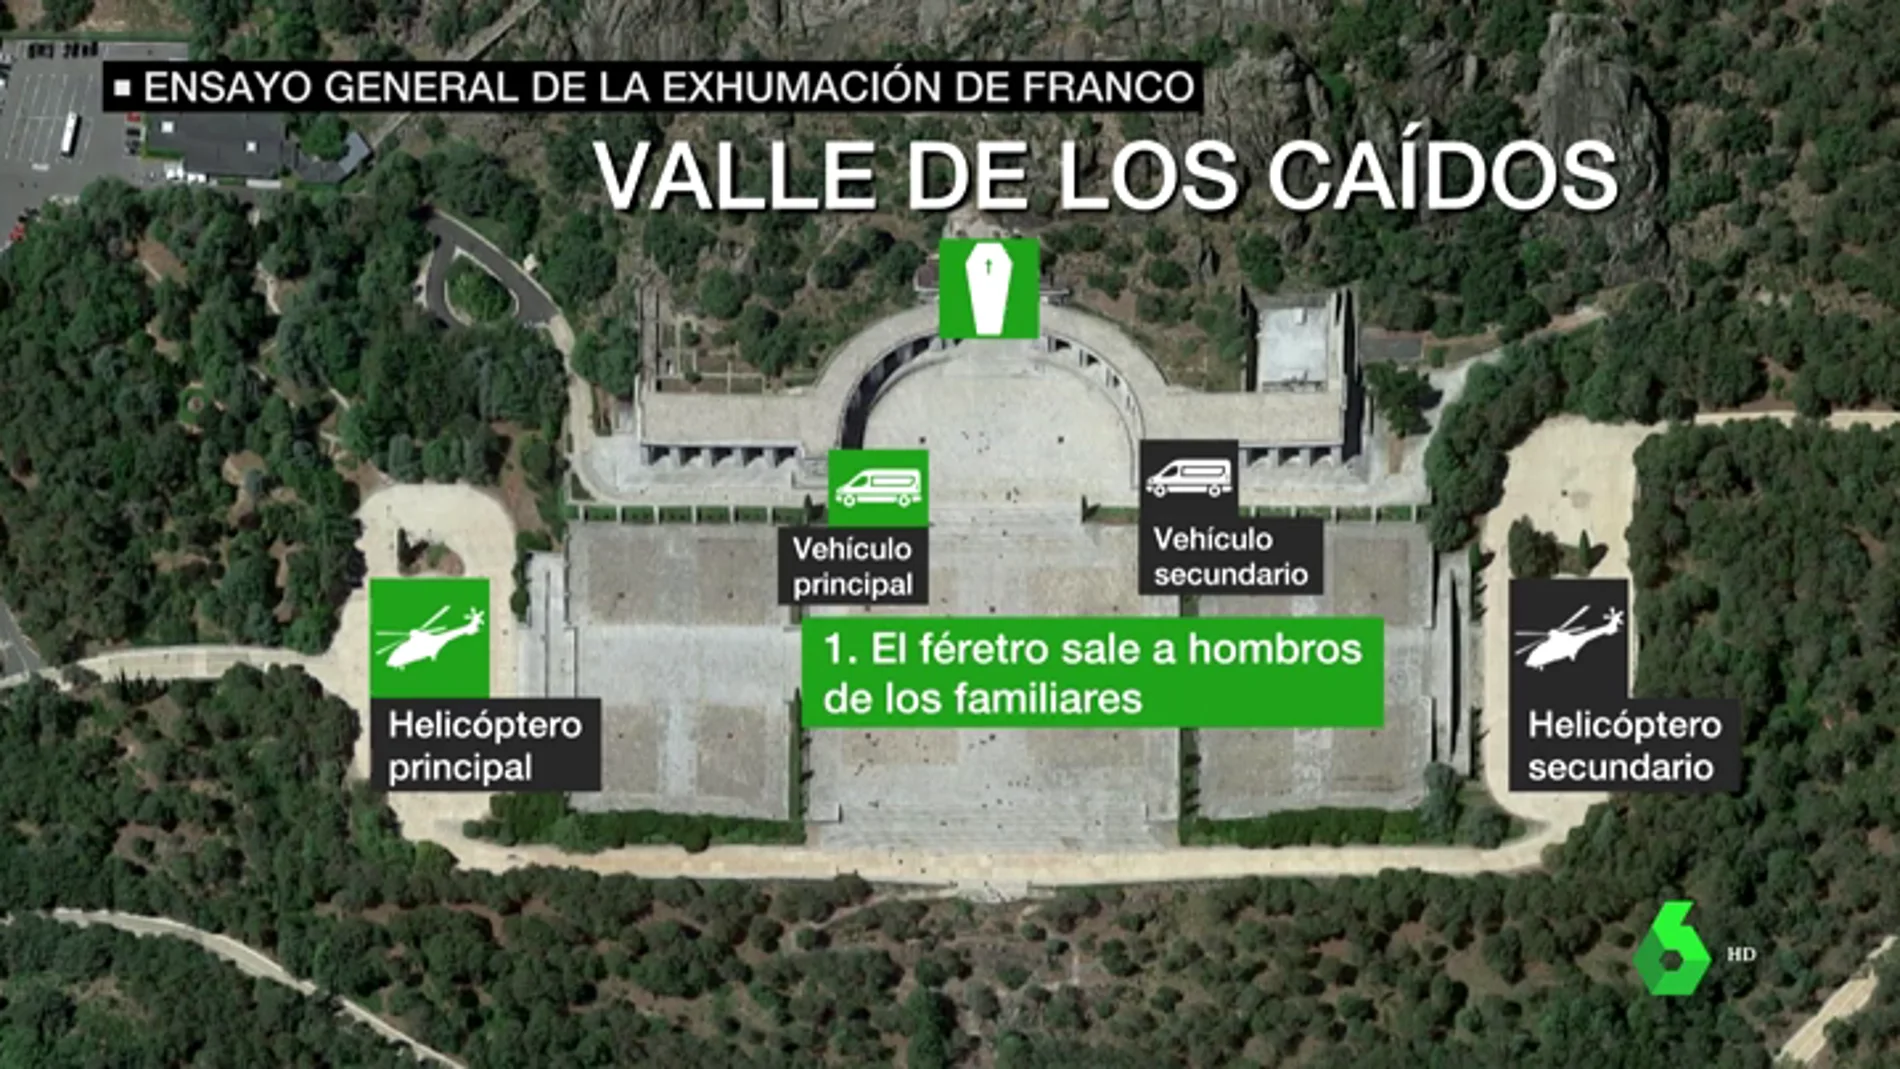 Ensayo de la exhumación de Franco